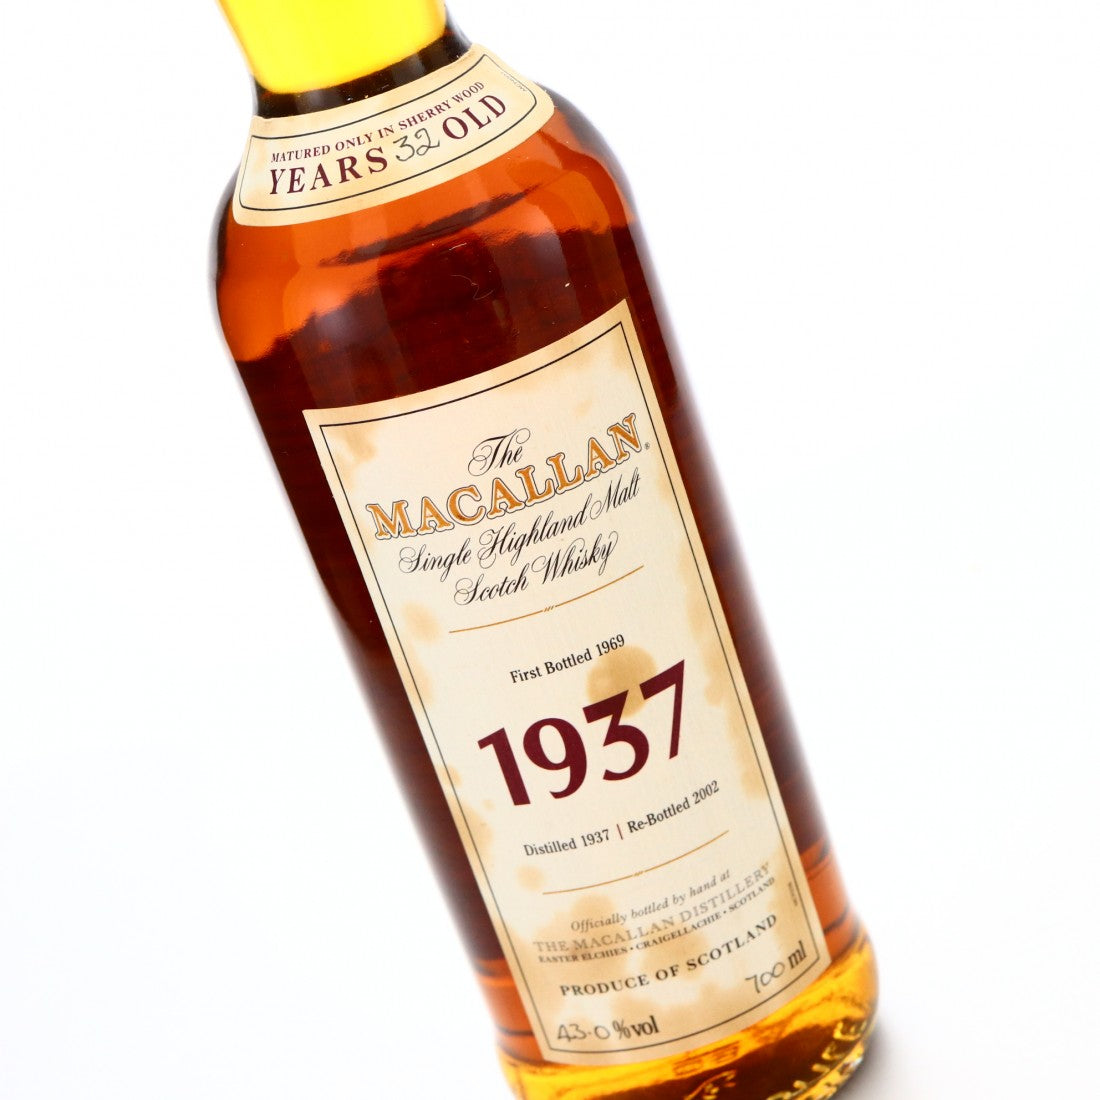 The Macallan 1937 Fine & Rare: A Whisky Masterpiece